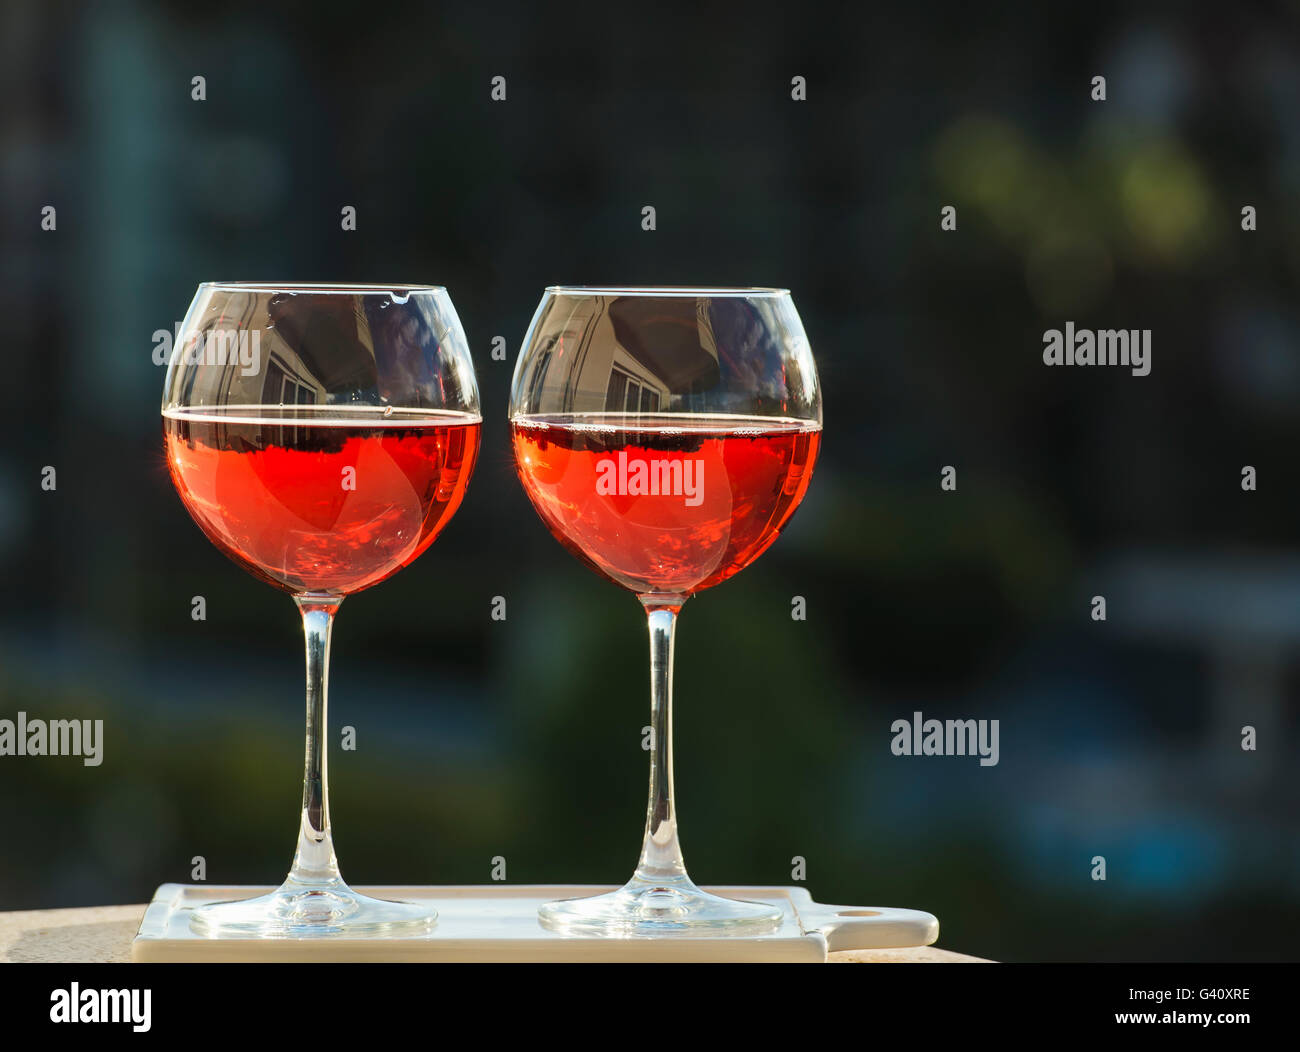 Zwei Gläser rose Wein, dunkles Grün Hintergrund Stockfoto